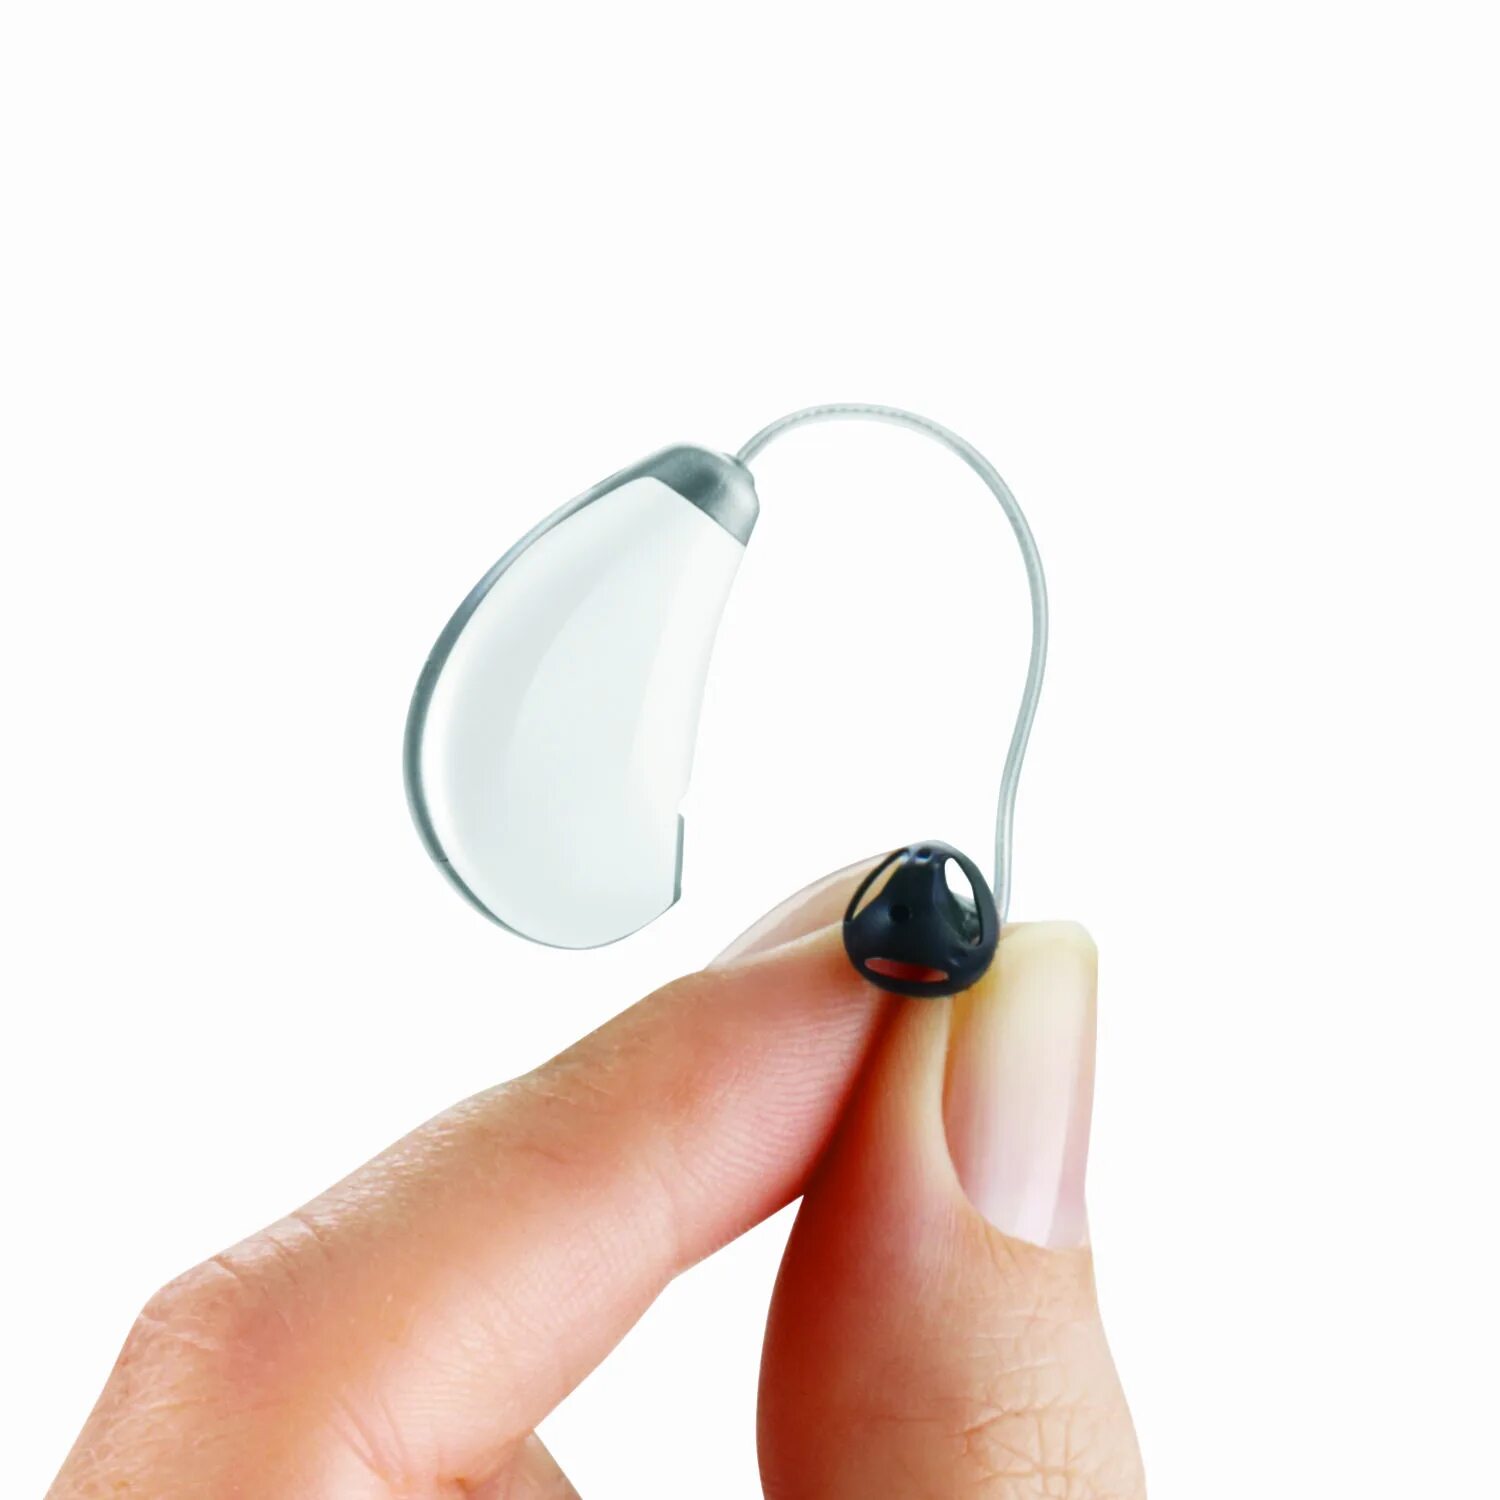 Внутриканальный слуховой аппарат Widex Mini s 270. Слуховой аппарат Tango 6m. Cros,NFM c090 слуховой аппарат. Слуховой аппарат Pure 2px. Качественные слуховые аппараты